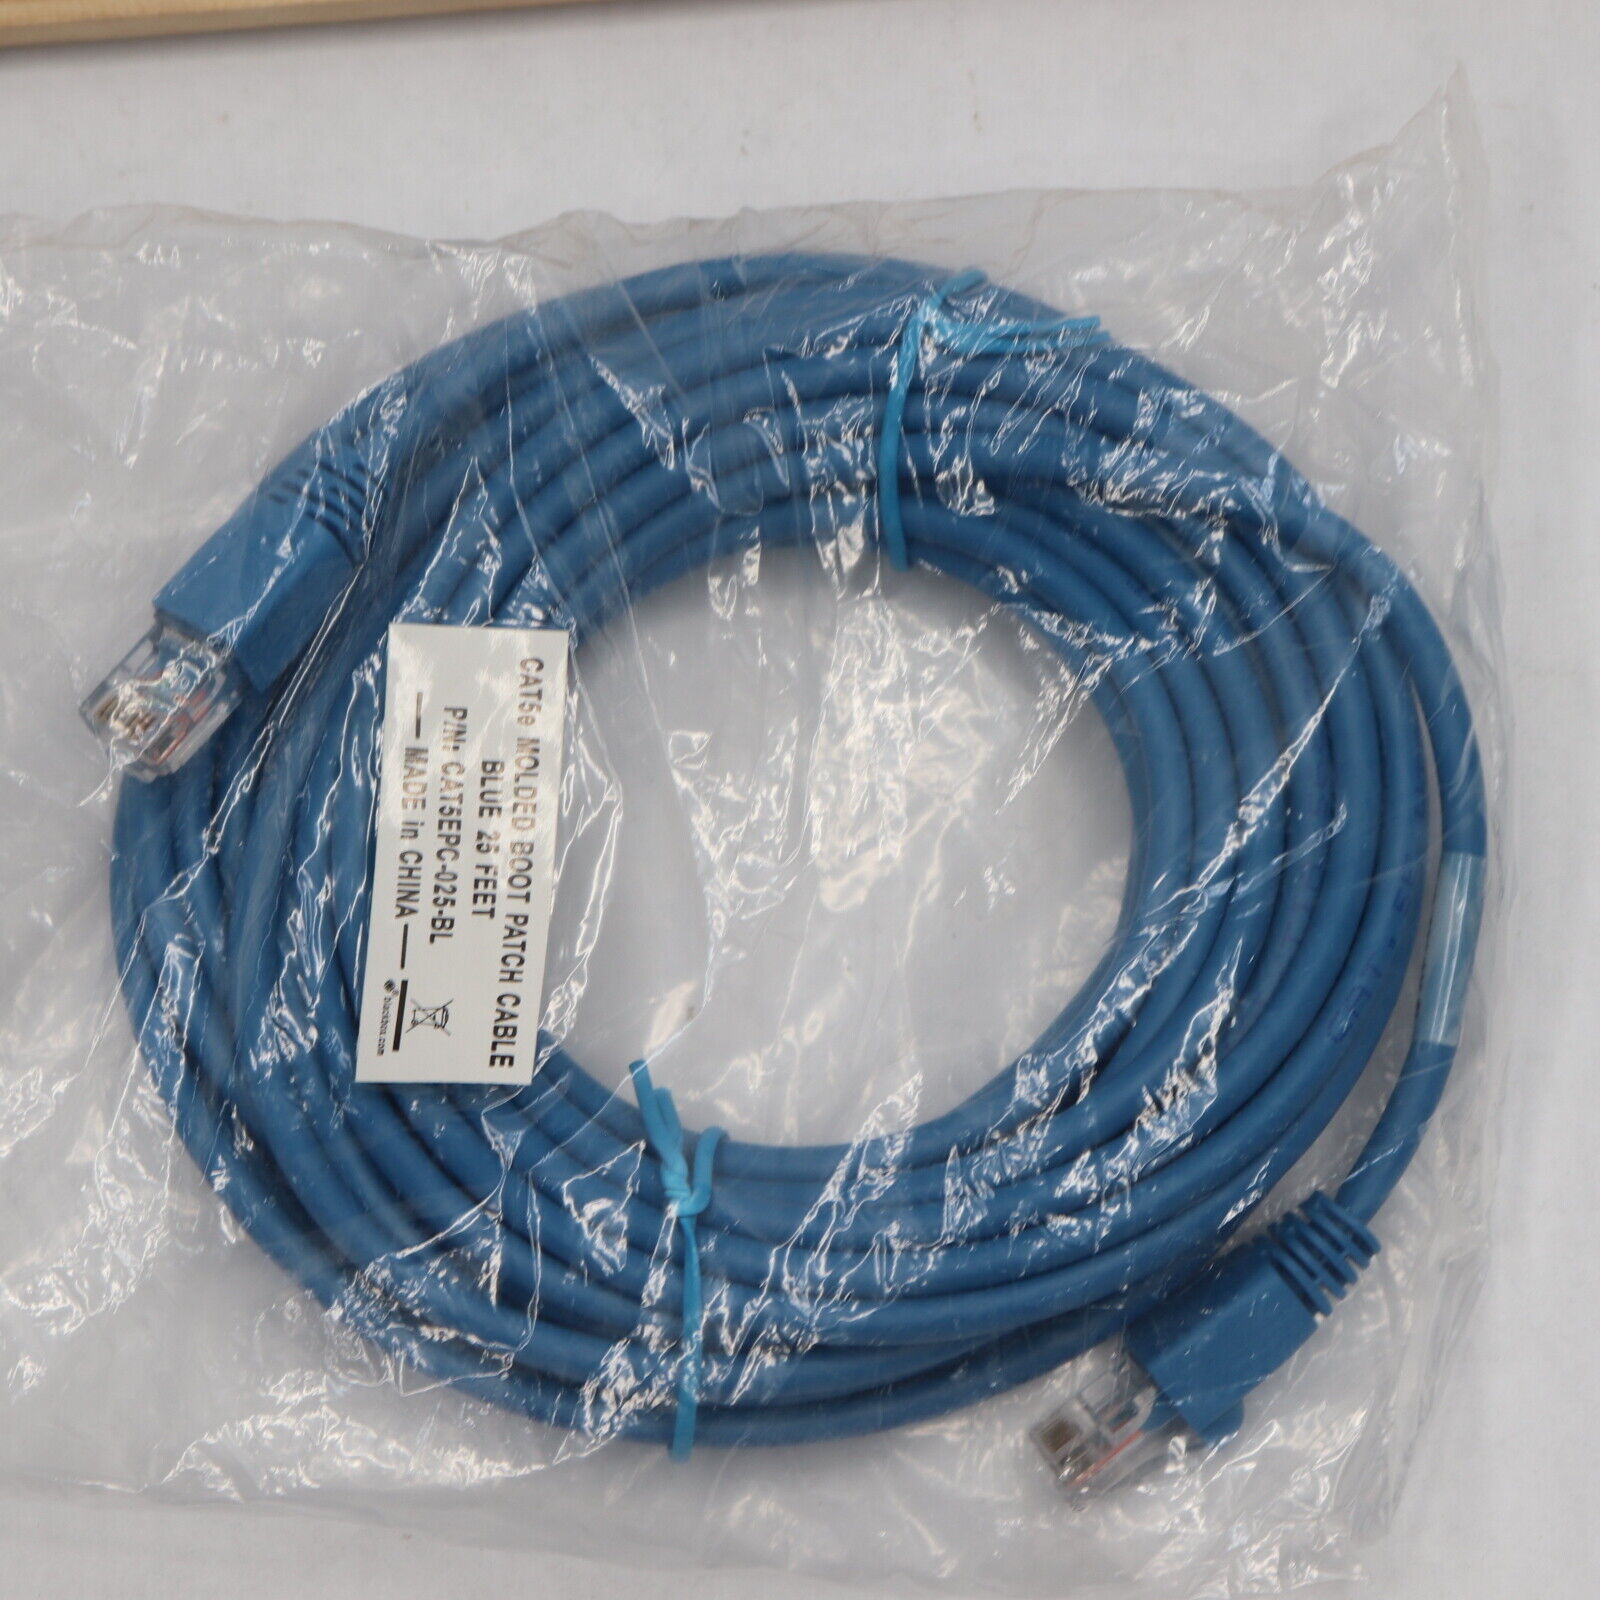 Stranded CAT5e Value Line Patch Cable Blue 25ft CAT5EPC-025-BL